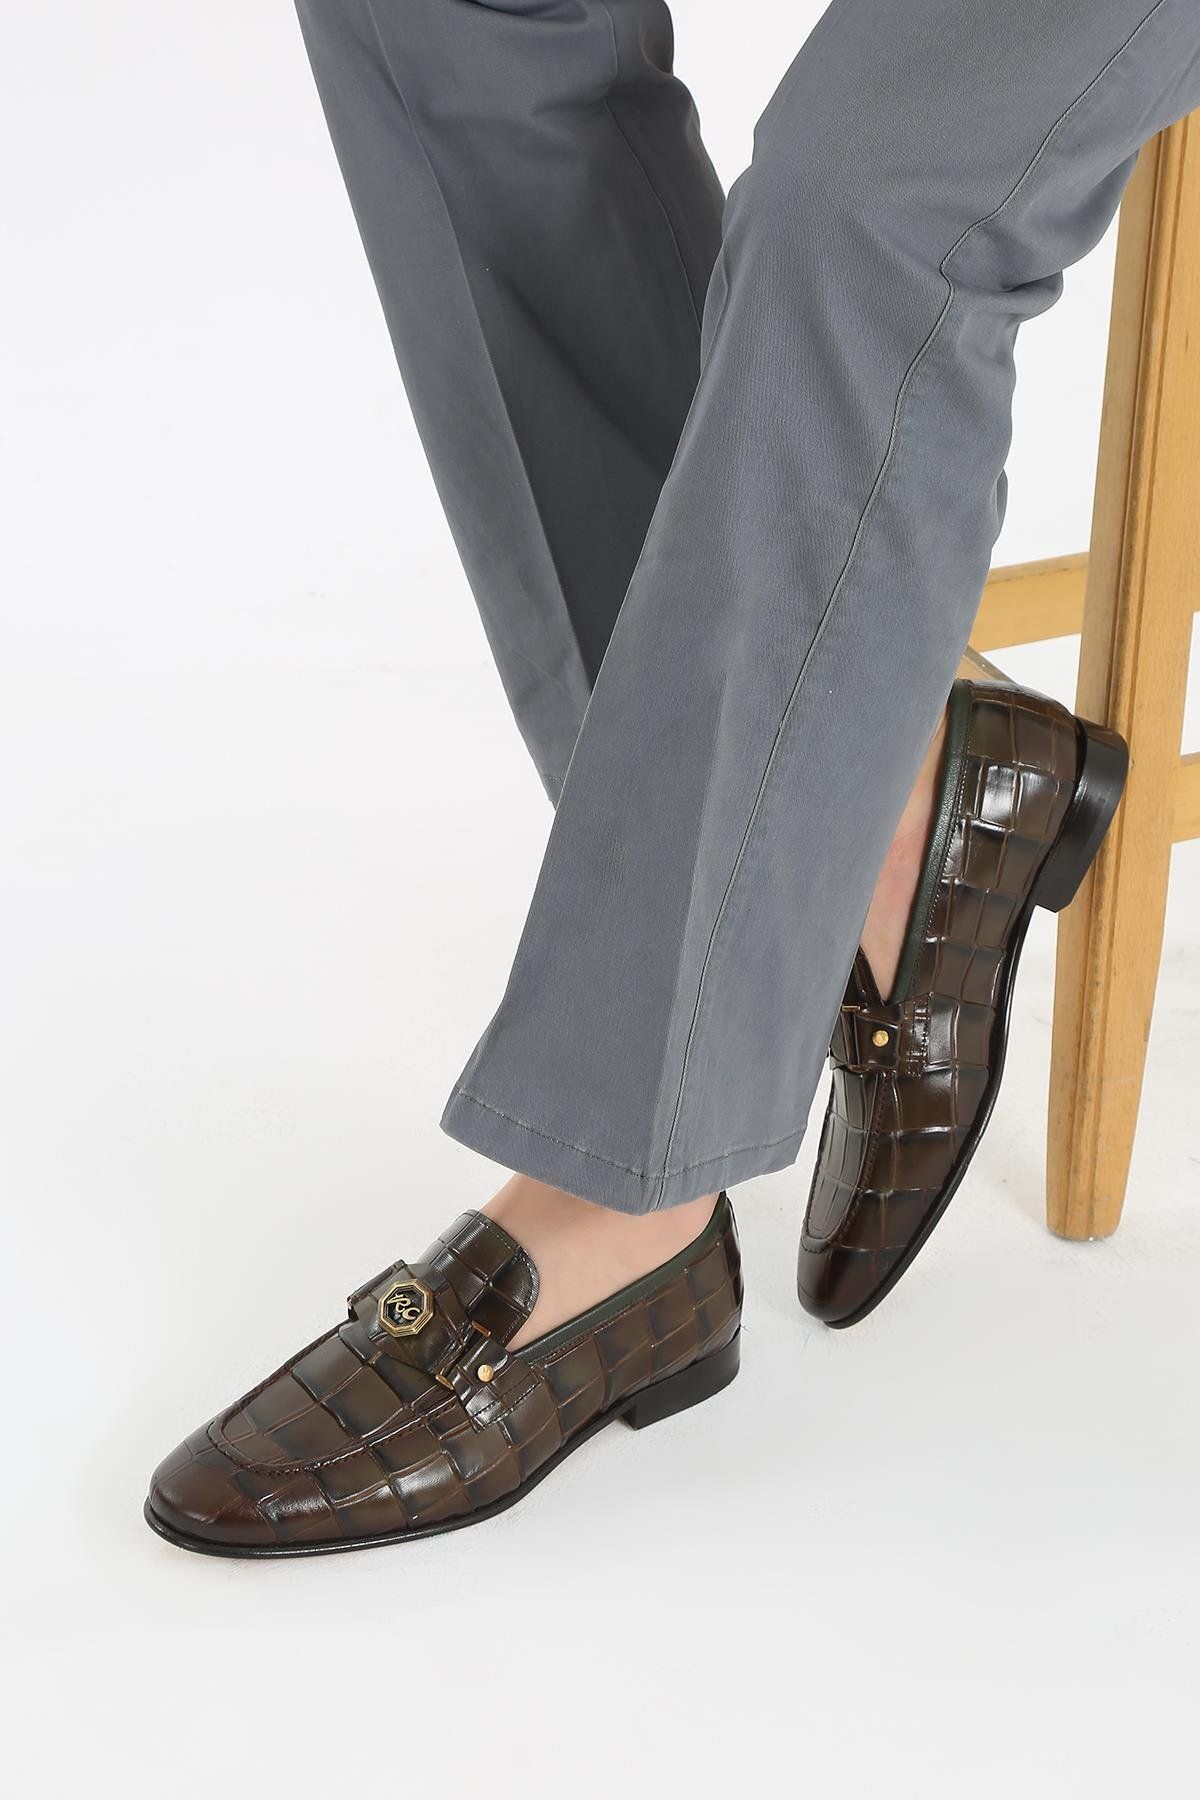 CassidoShoes Haki Kroko Deri Kösele Enjeksiyon Taban Toka Detaylı Kemer Hediyeli Erkek Klasik Ayakkabı 023-54240